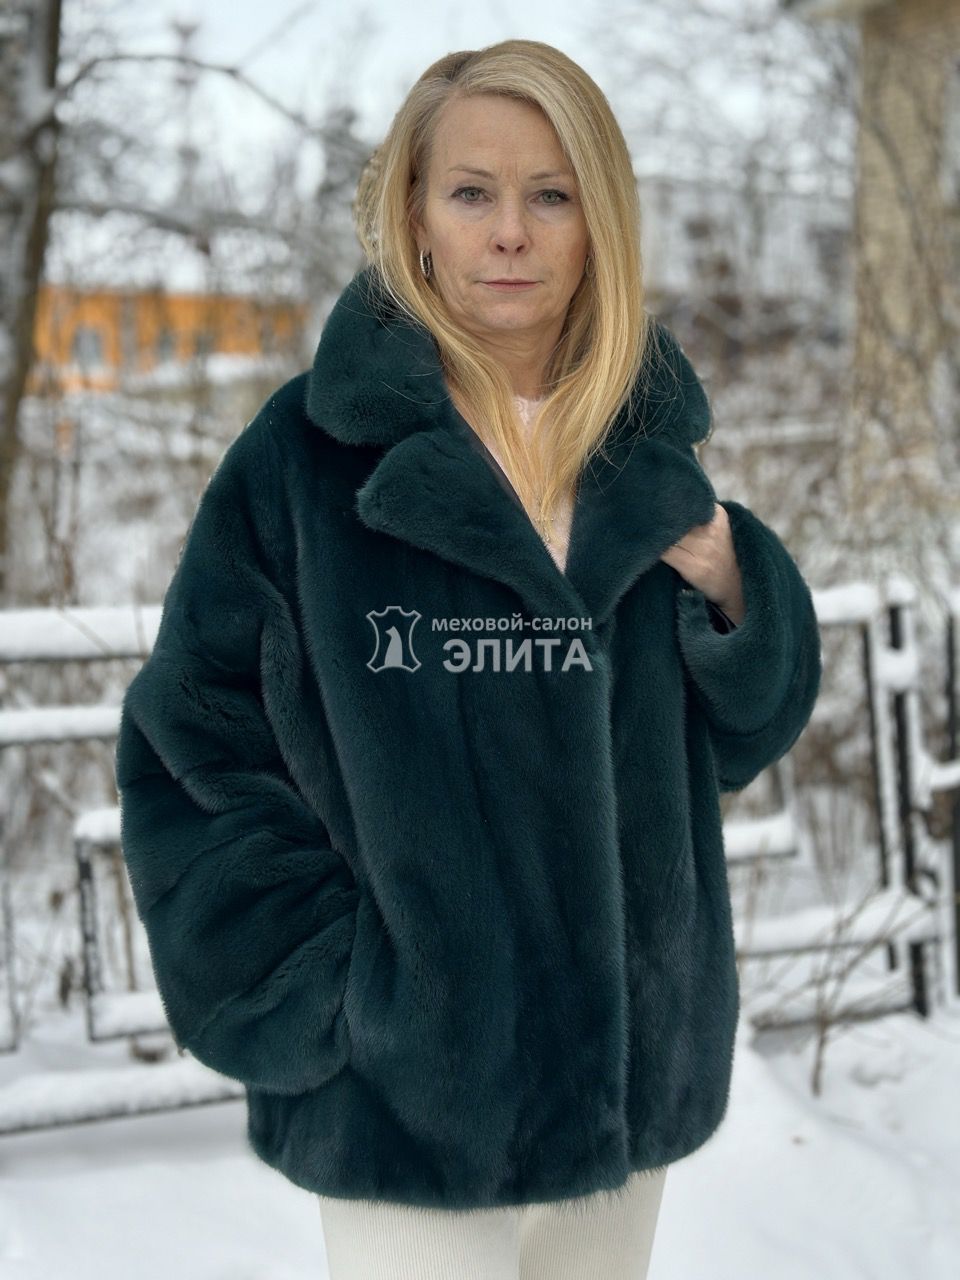 Куртка из норки S 1399 р-р 44-54, цена 128500 рублей в интернет-магазине кожи и меха ЭЛИТА. Вид 2